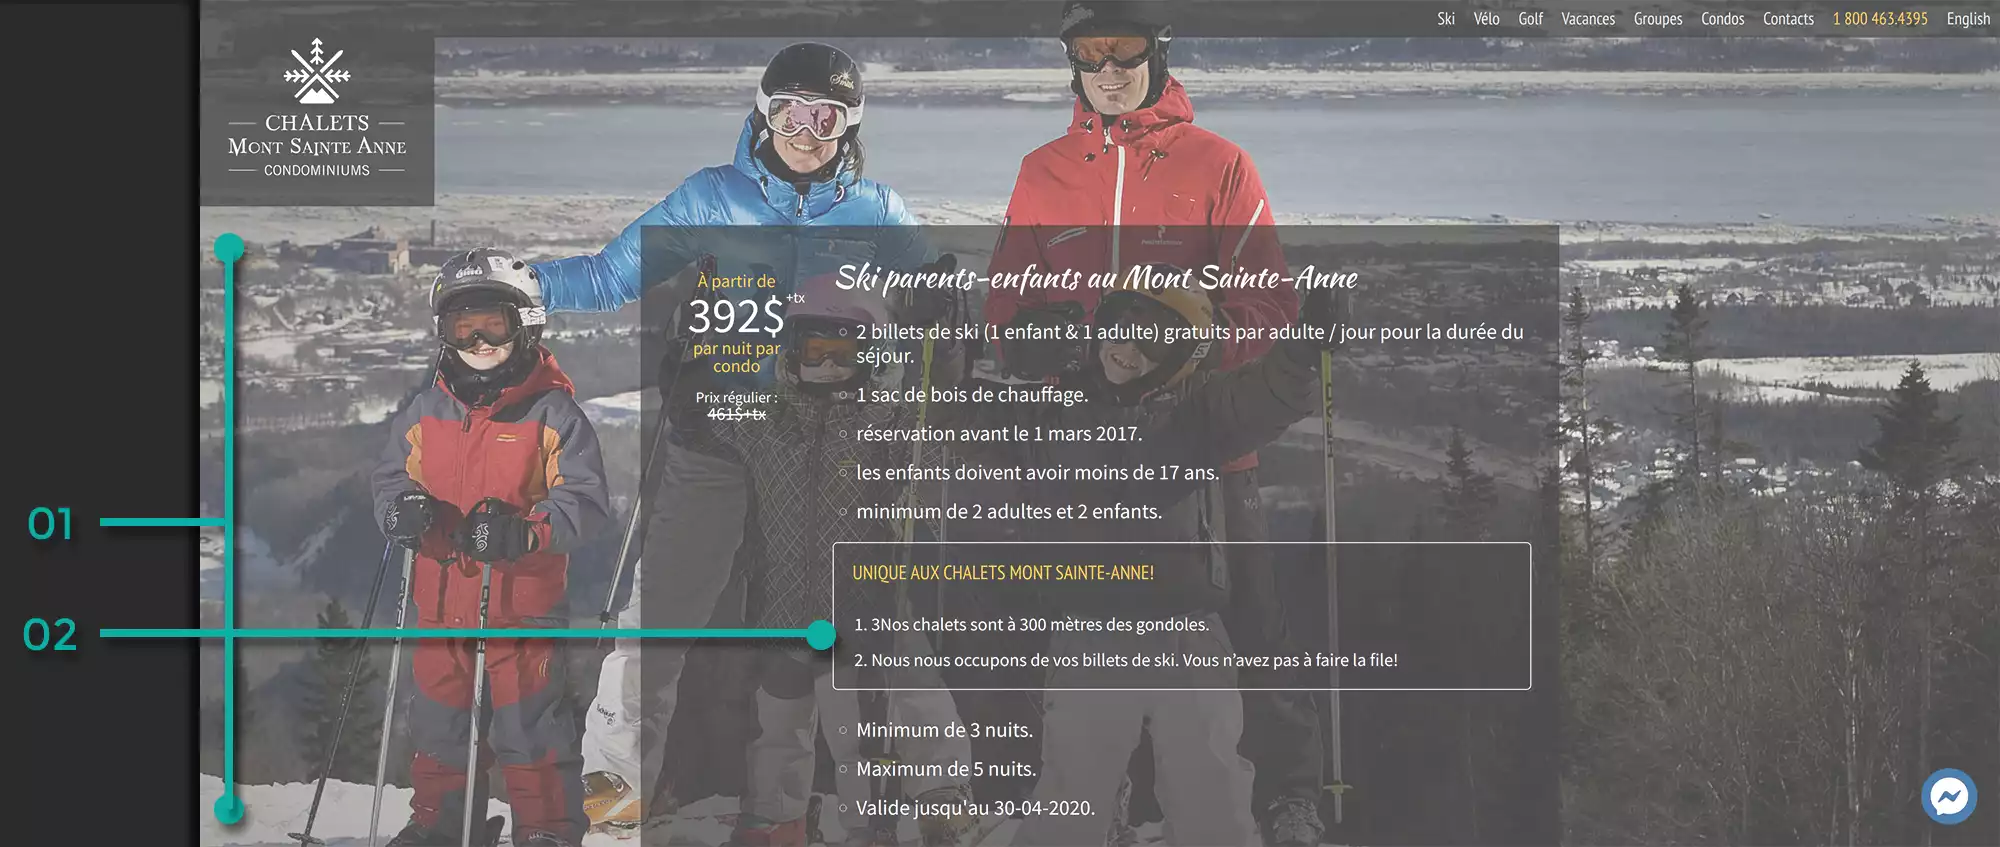 Illustration de la page forfaits sur le nouveau site Web de Chalets Mont Sainte-Anne